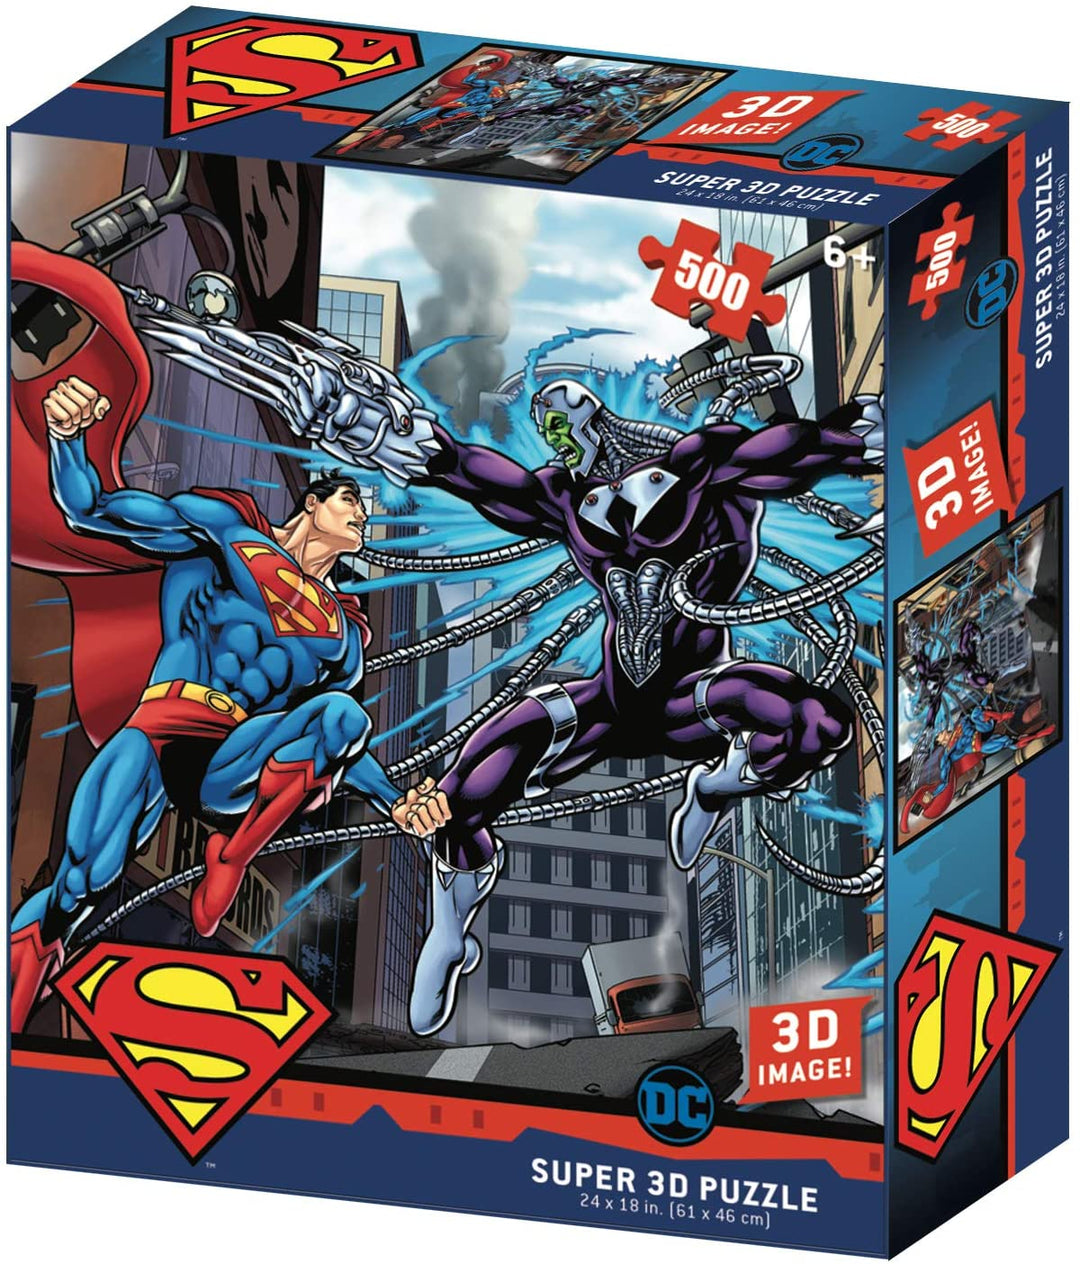 DC Comic SM32522 Superman vs Electro Puzzle 3D Effect Jigsaw, Multicolour